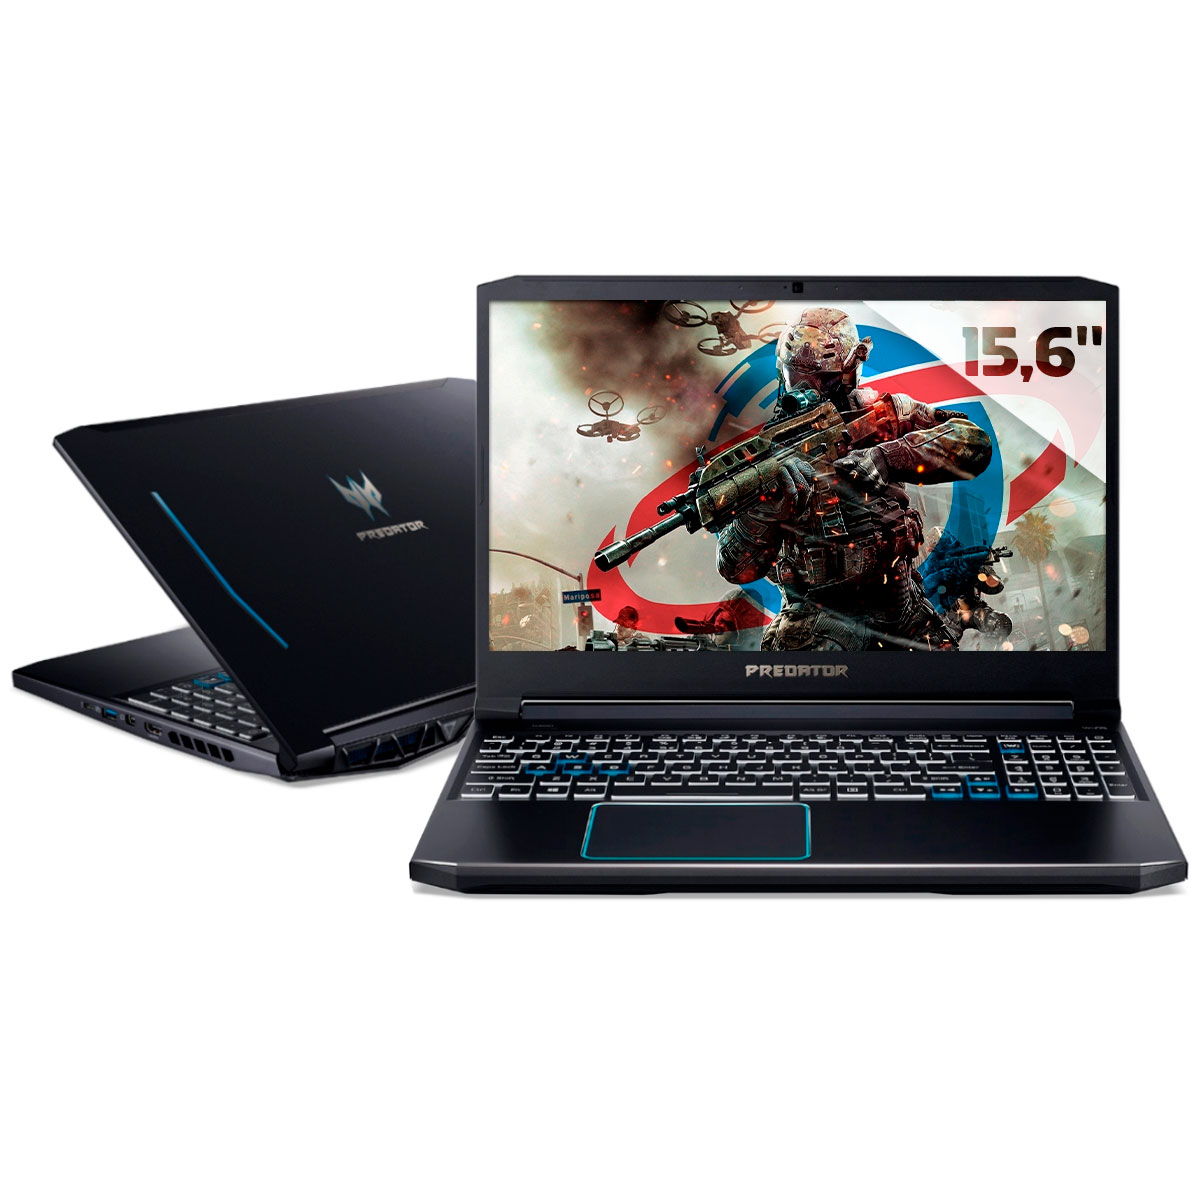 Notebook Acer Gaming Predator Helios 300 - Intel i7 10750H, RAM 16GB, SSD 512GB + HD 2TB, GeForce RTX 2070, Tela 15.6